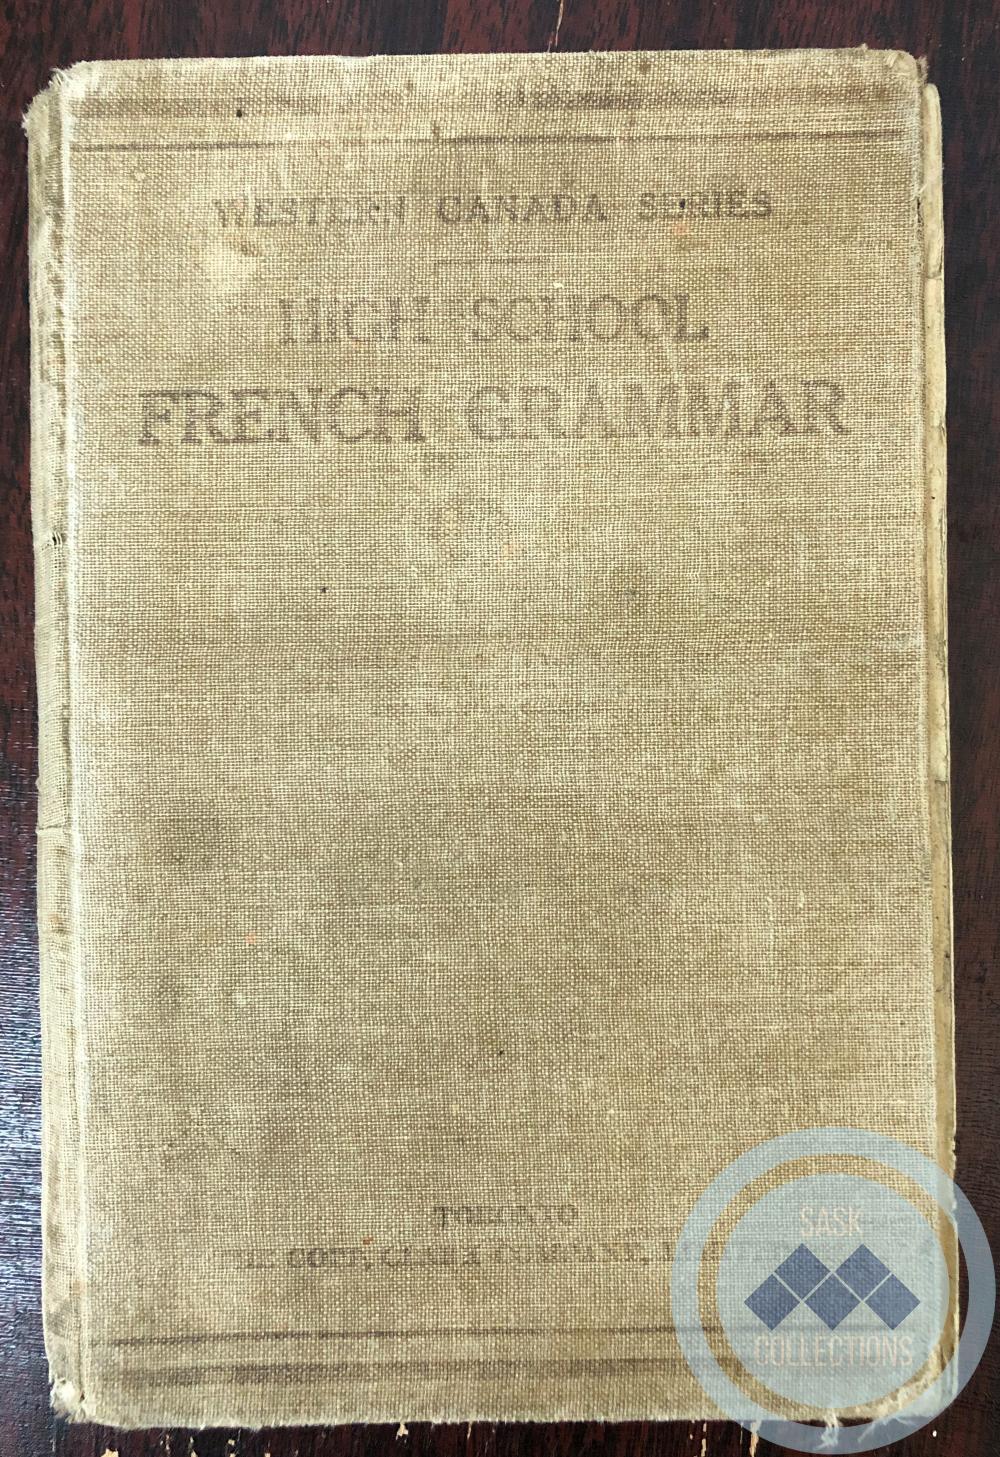 High School French Grammar